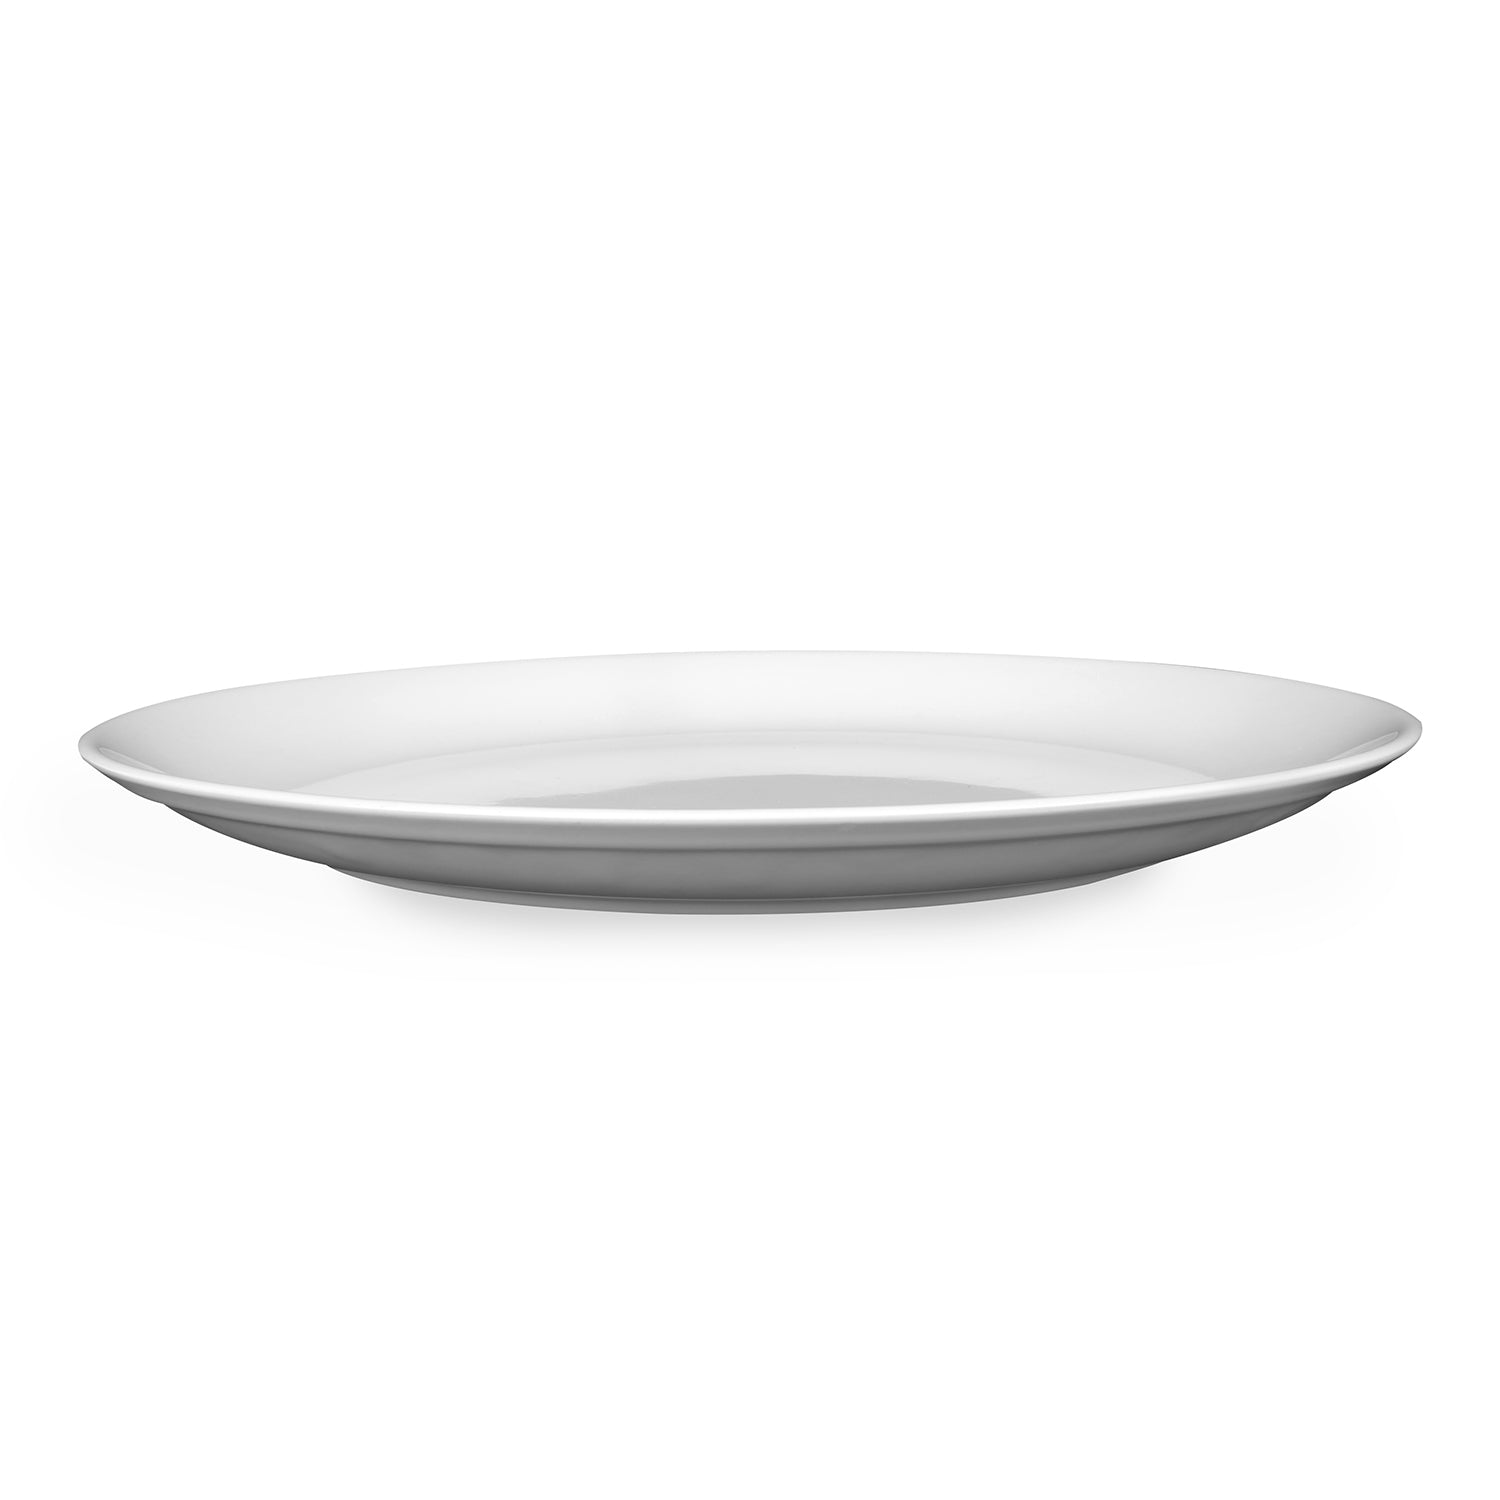 Horeca 25 cm Round Dinner Plate (White)